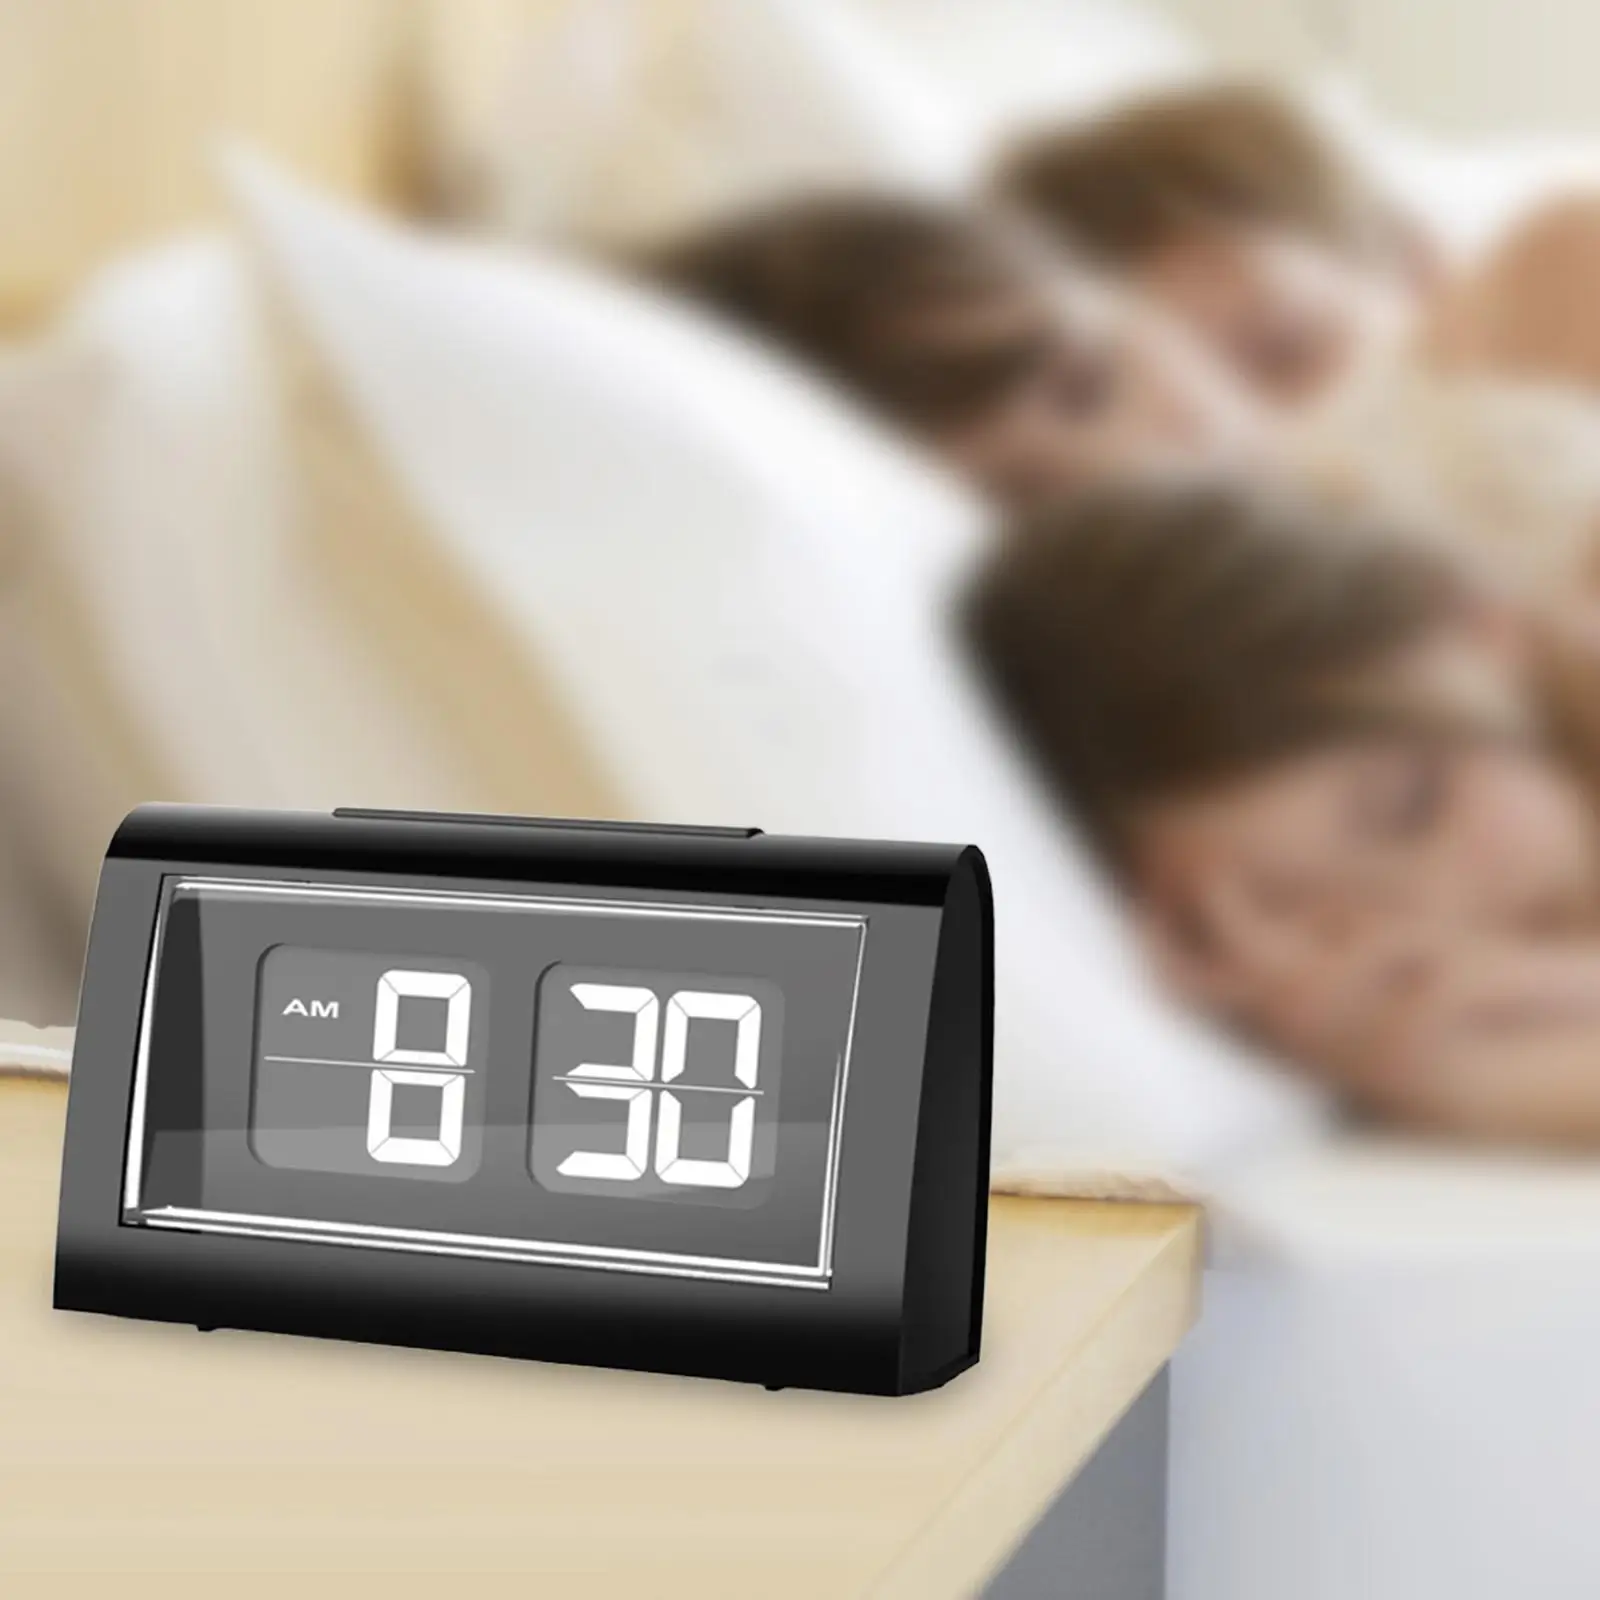 Auto Flip Desk Alarm Clock LCD Display calender Bedroom Home backlight Digital